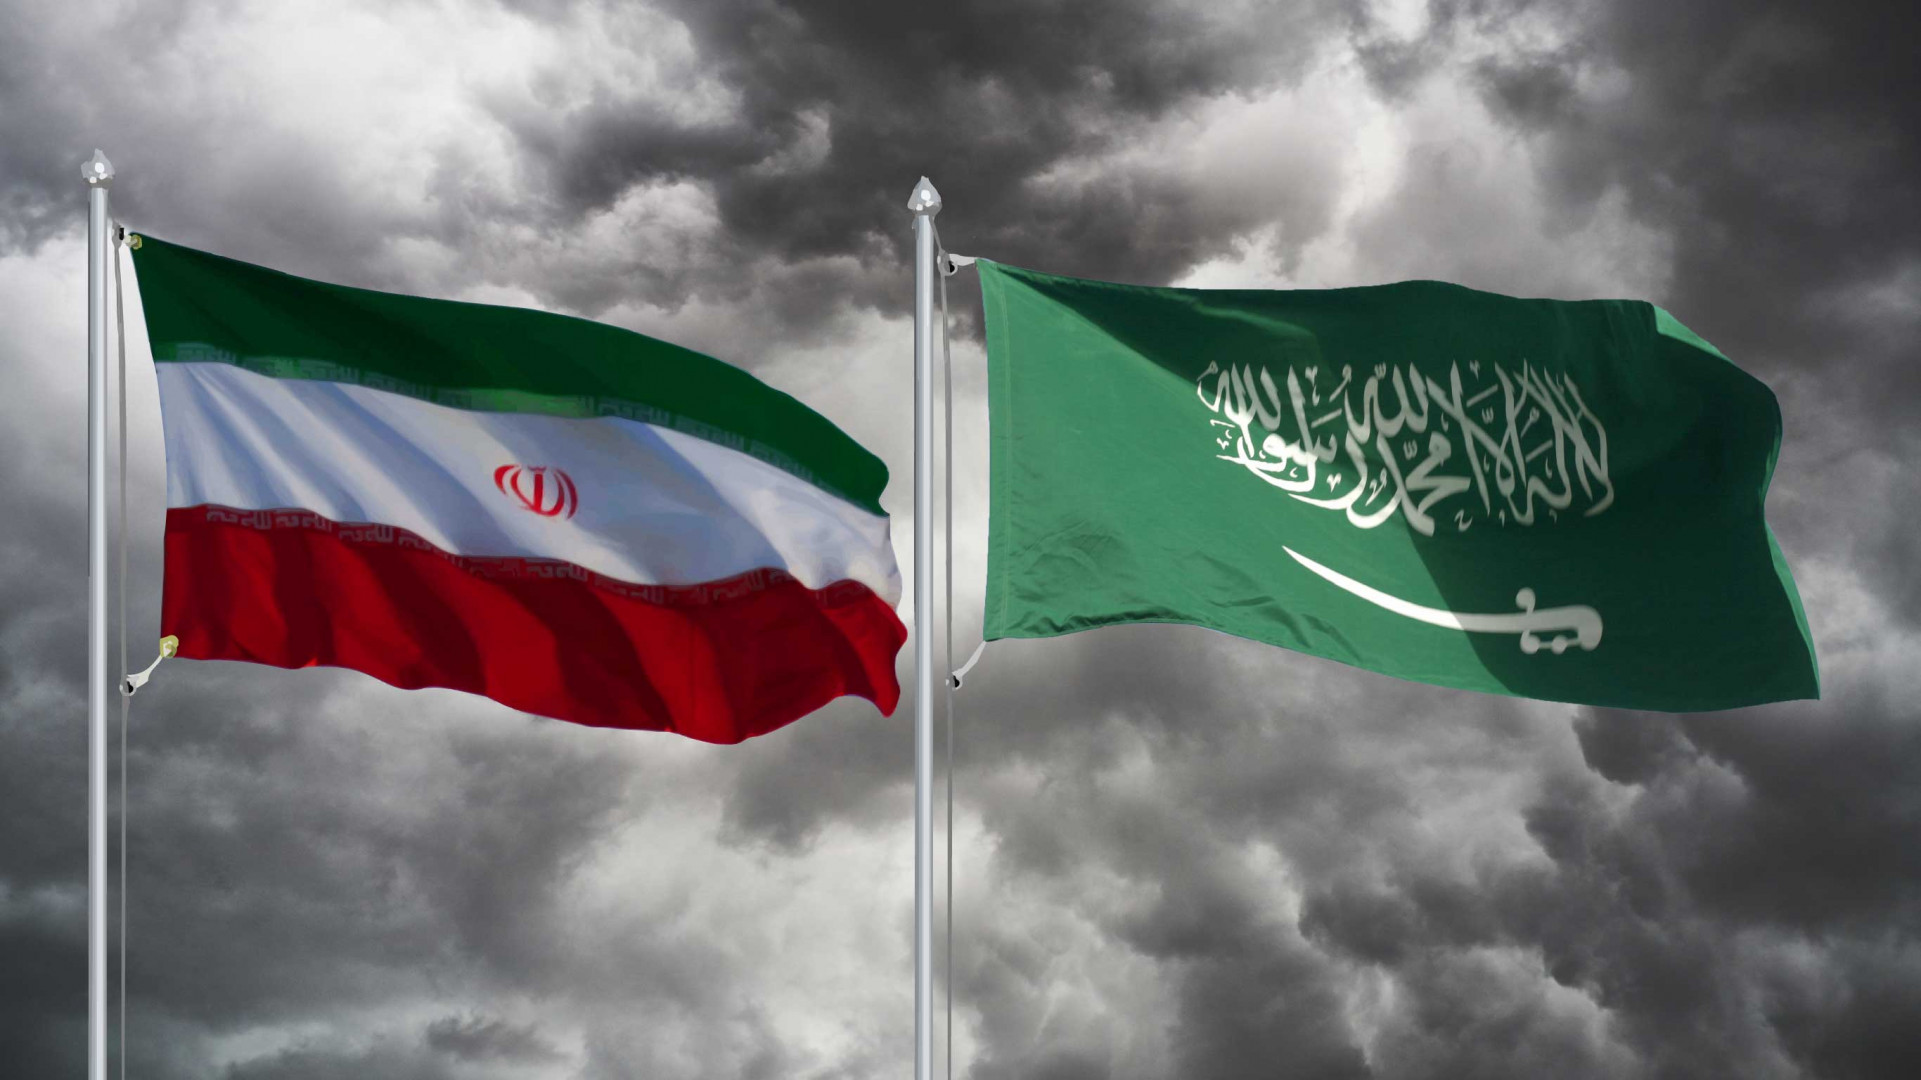 رئيس إيران يقبل دعوة الملك سلمان لزيارة الرياض